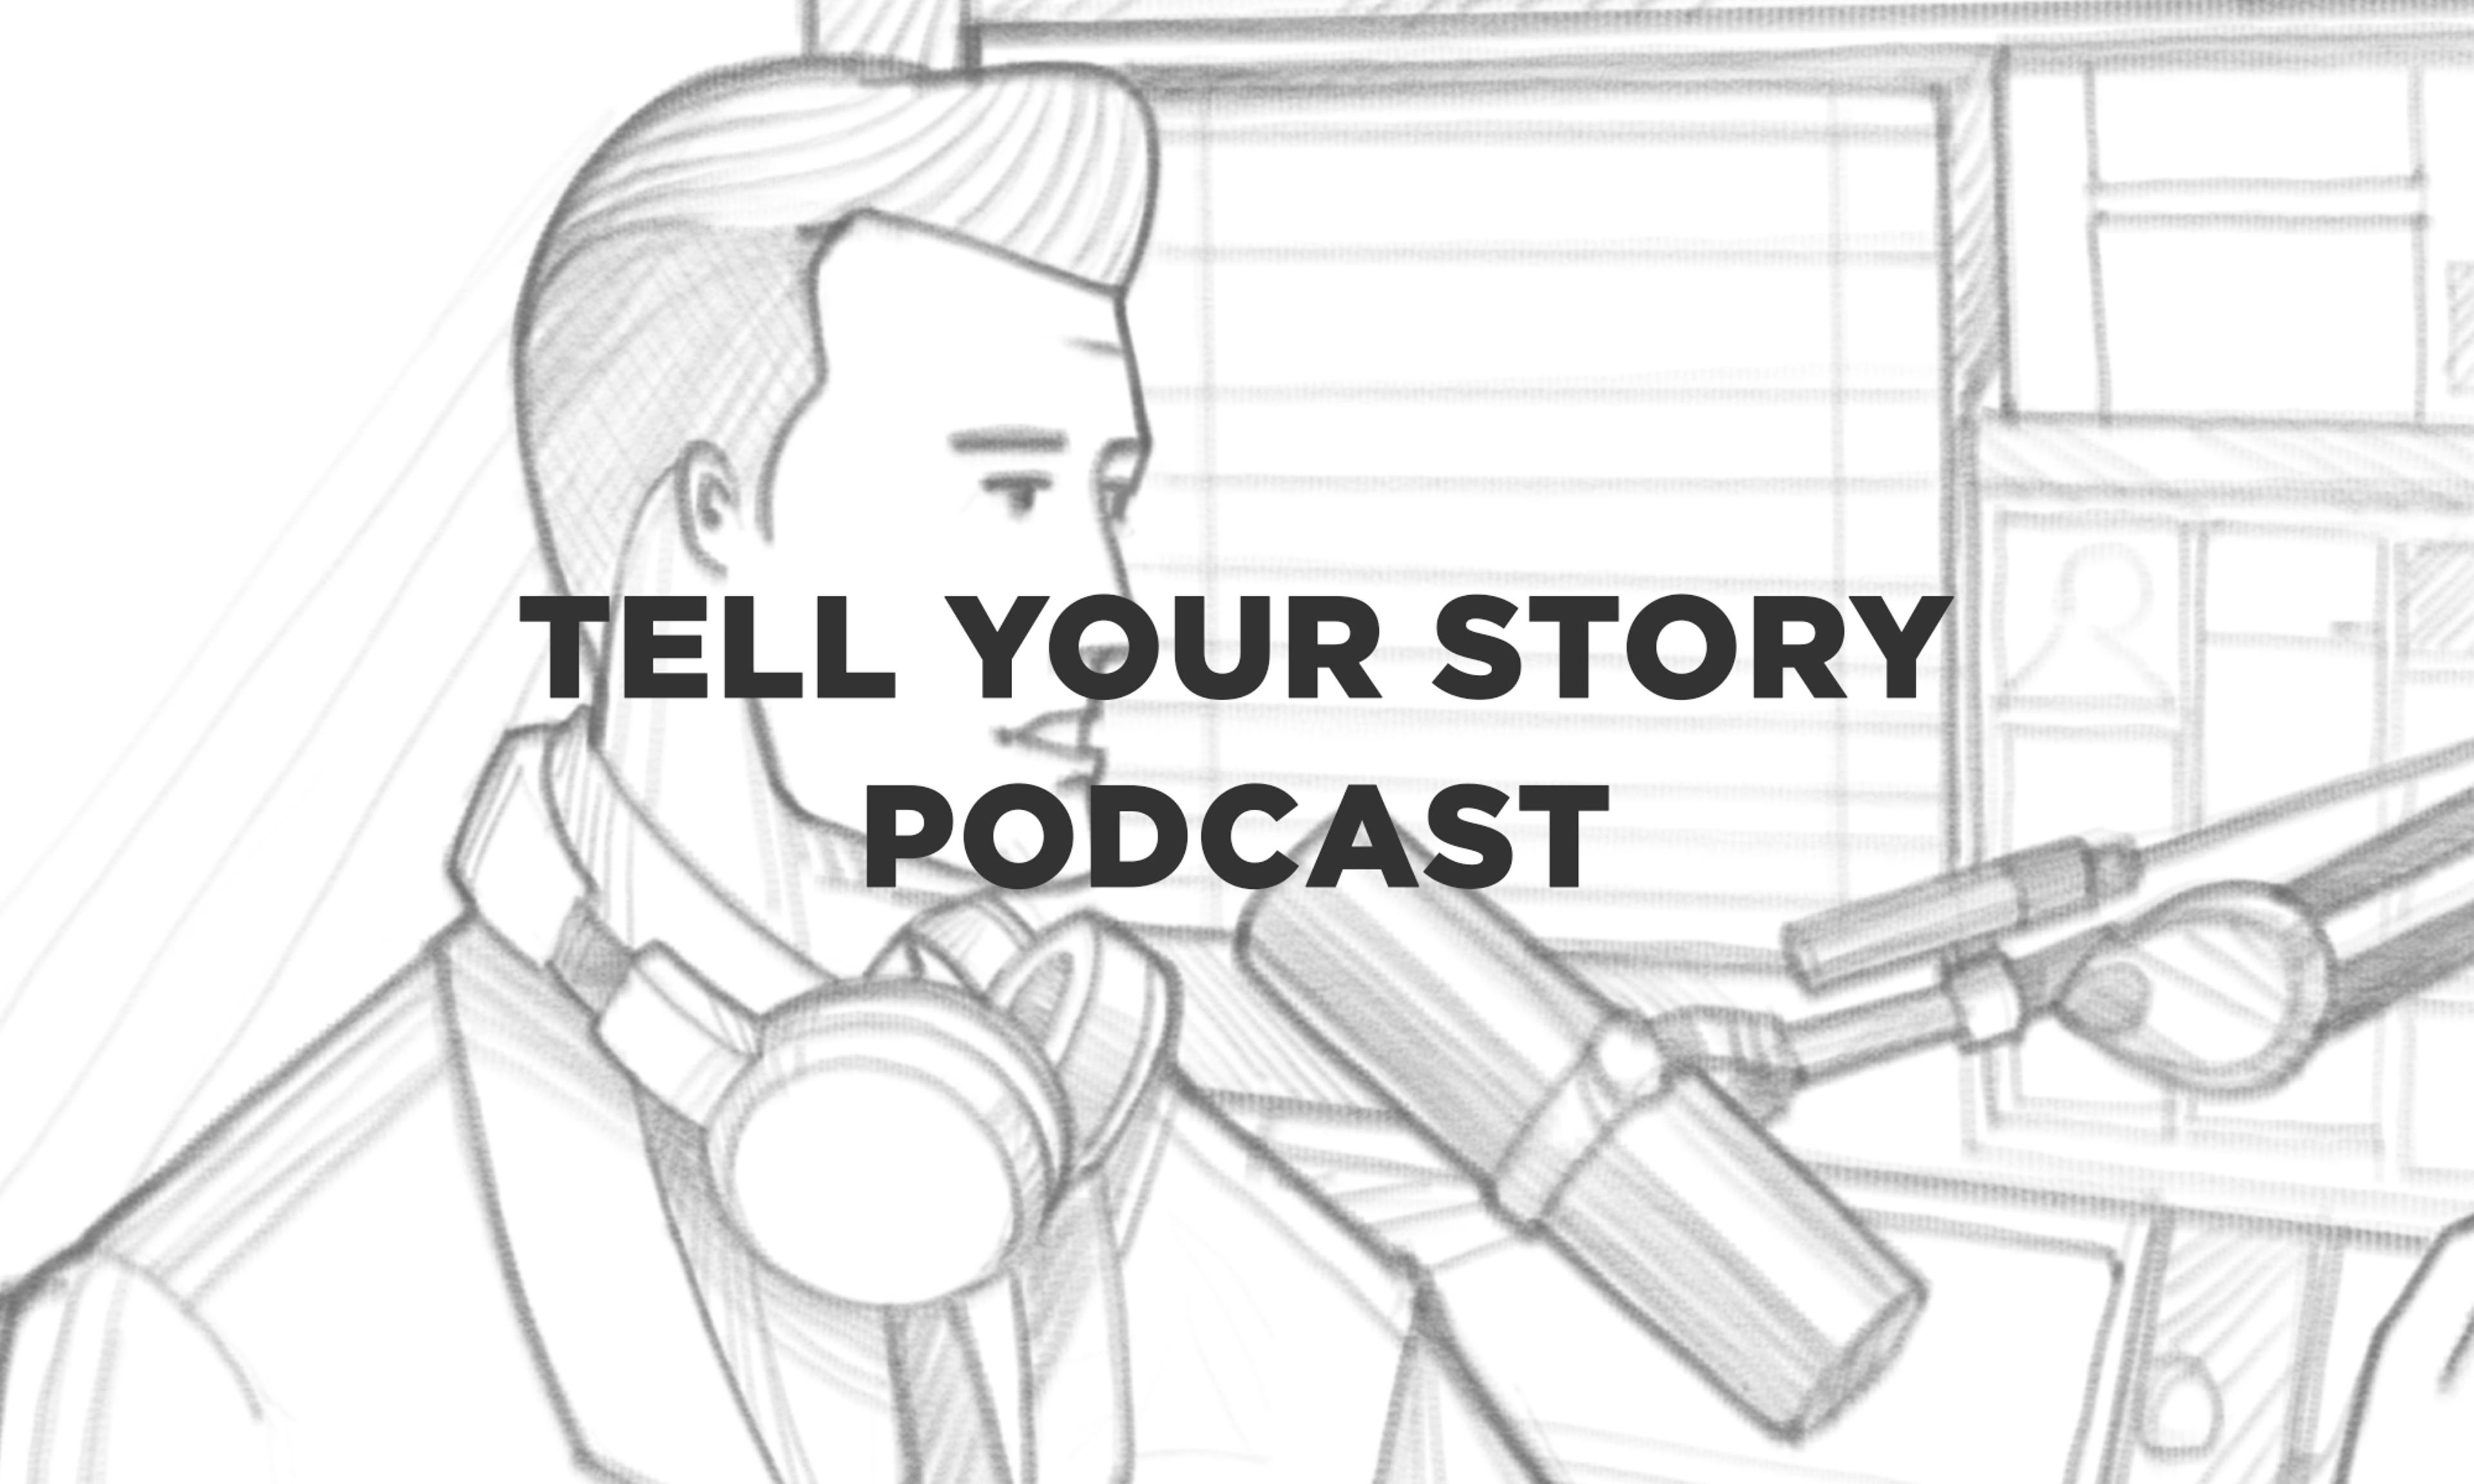 Podcast Conte a sua História